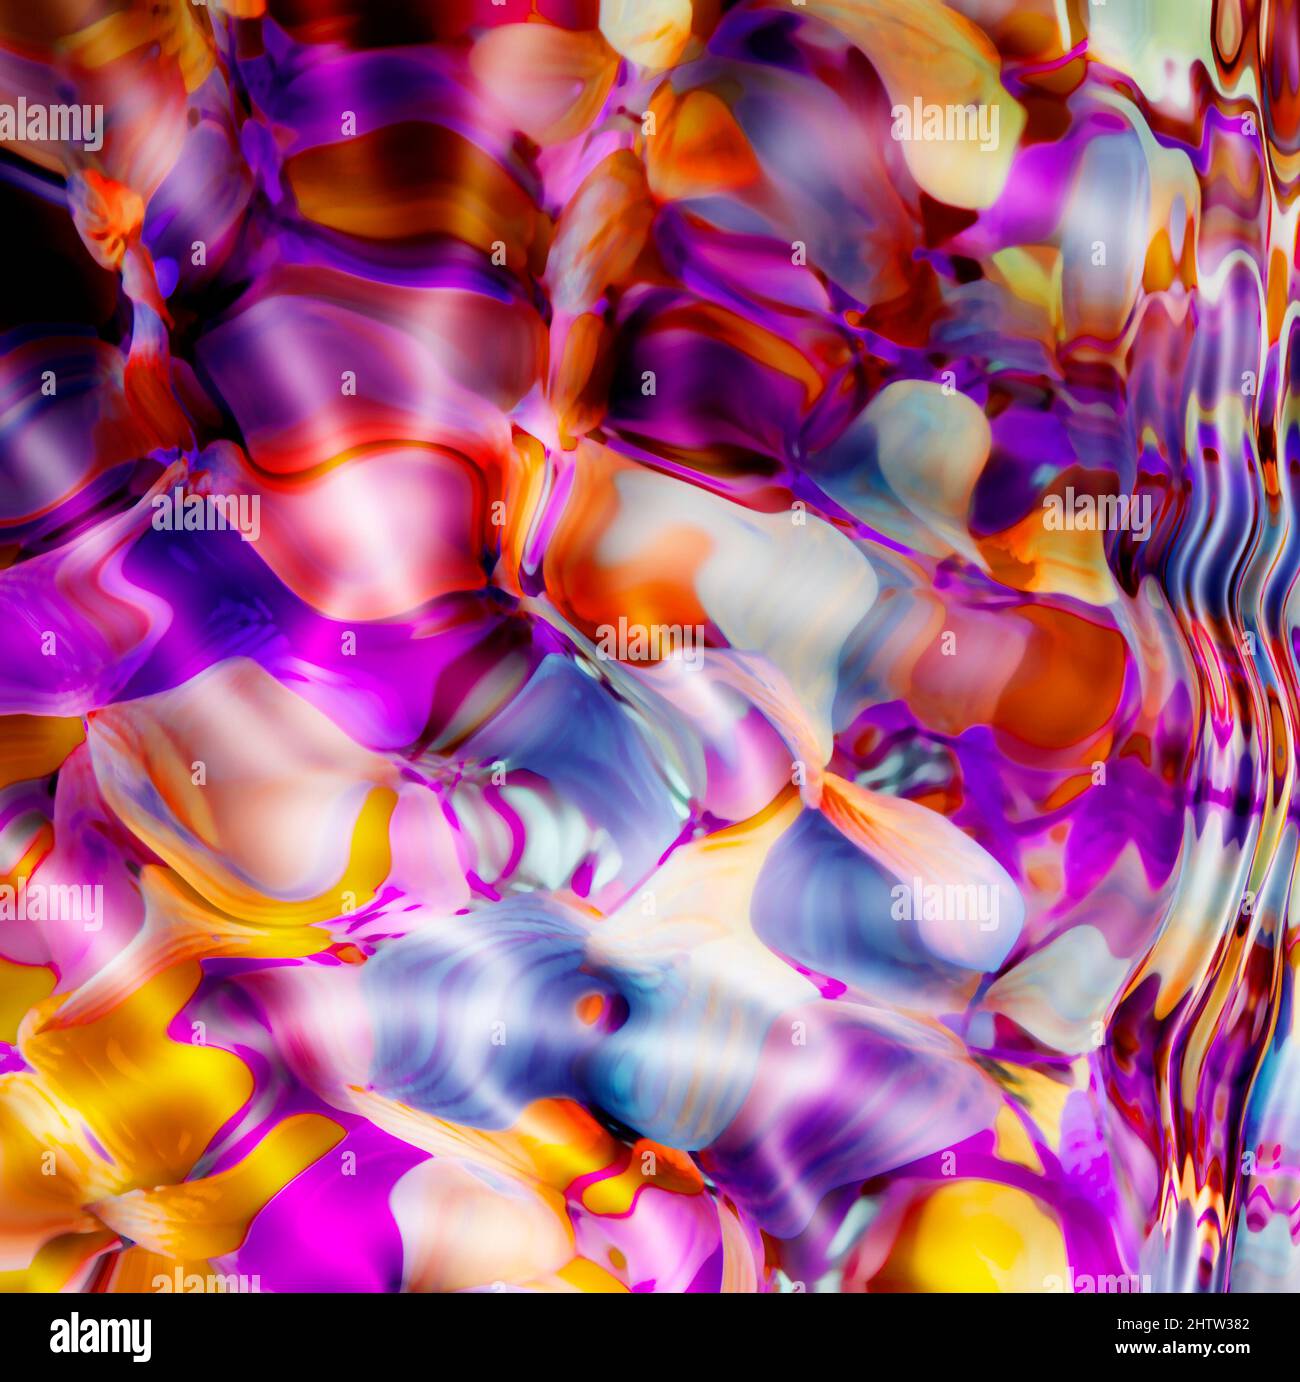 Färben Sie Ihre Fantasie. Aufnahme eines farbenfrohen abstrakten Hintergrunds. Stockfoto